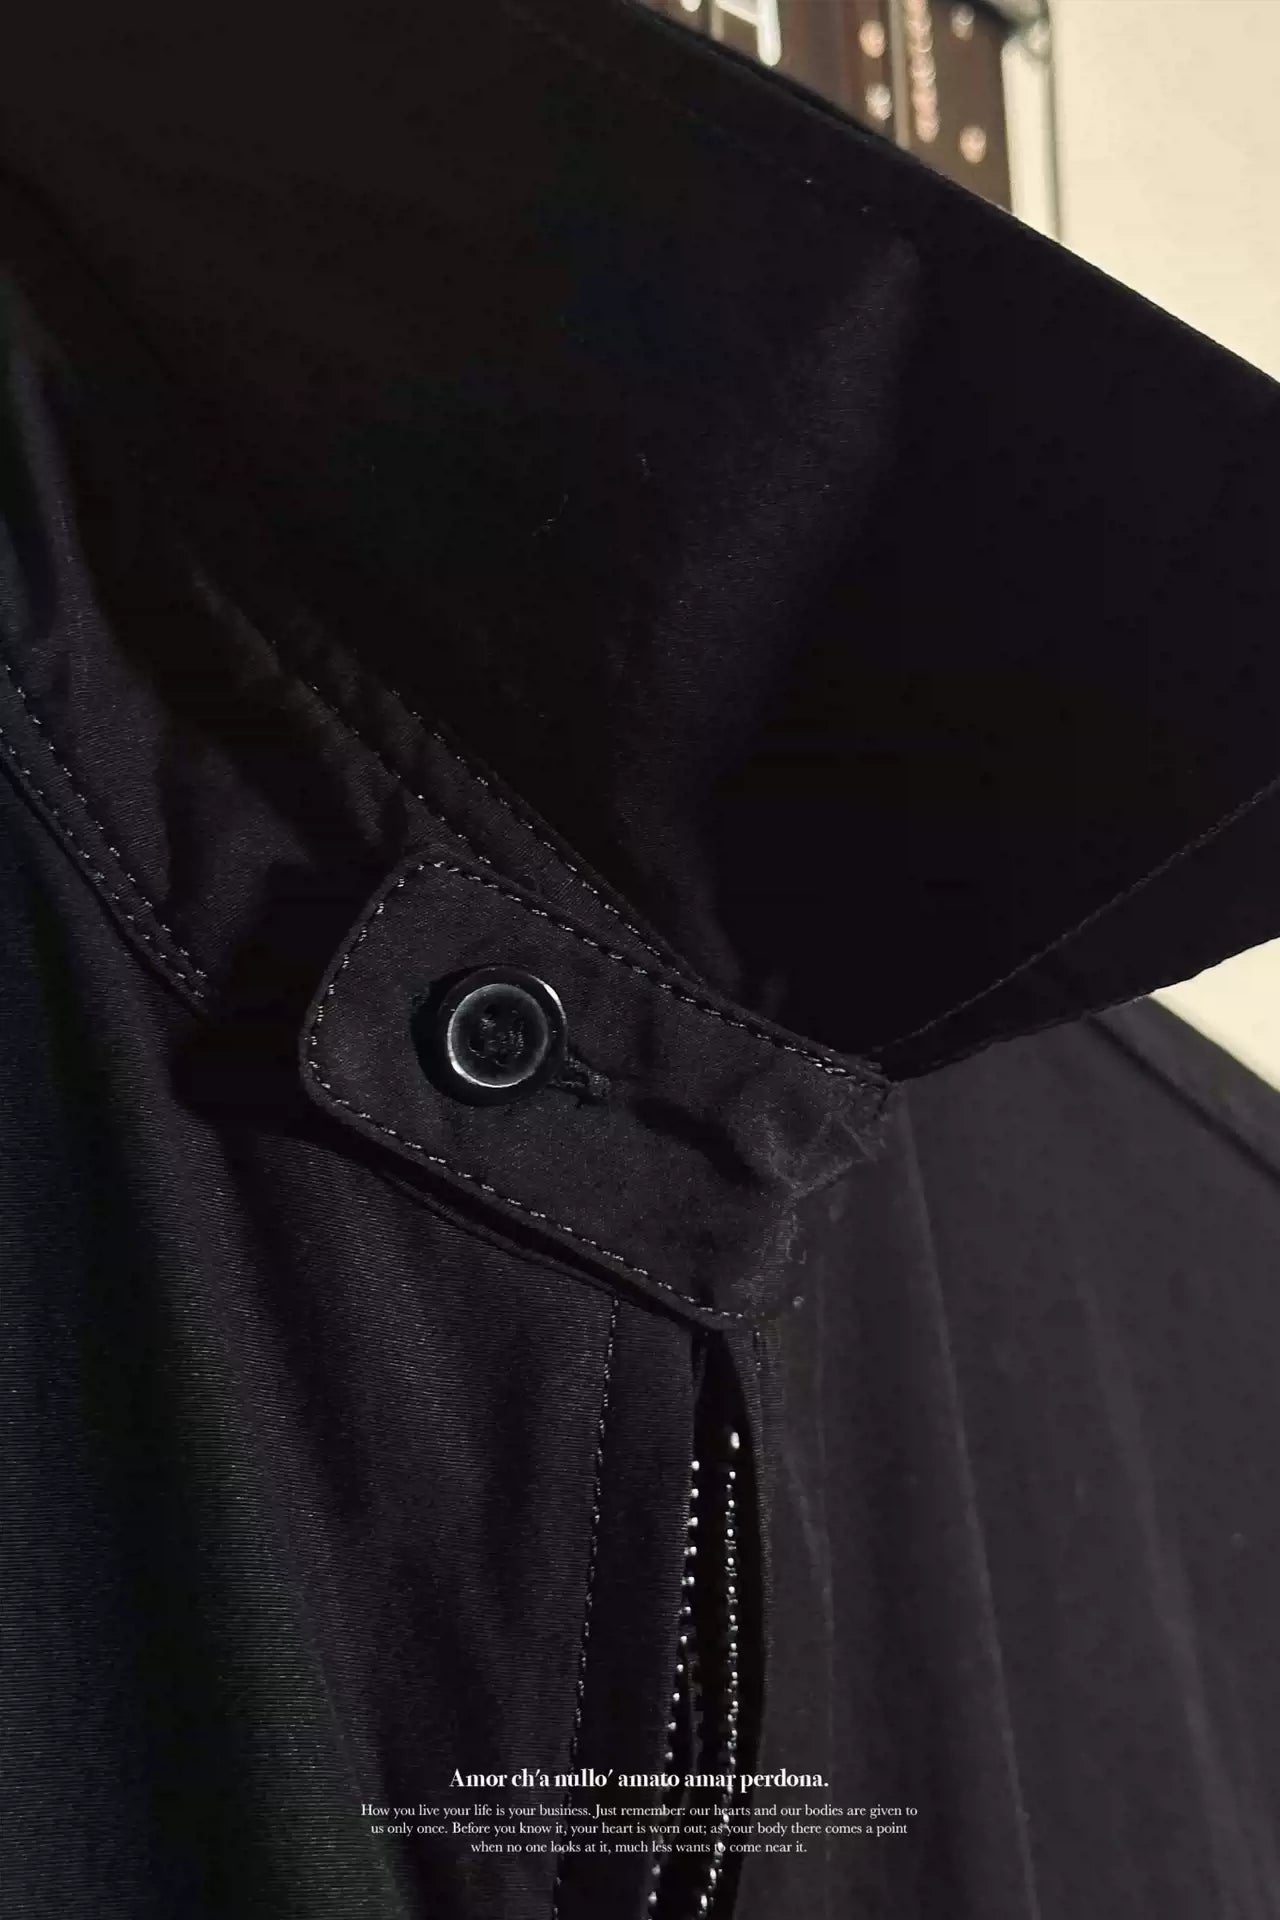 Yohji Yamamoto's Classic Double-zip Black Jacket